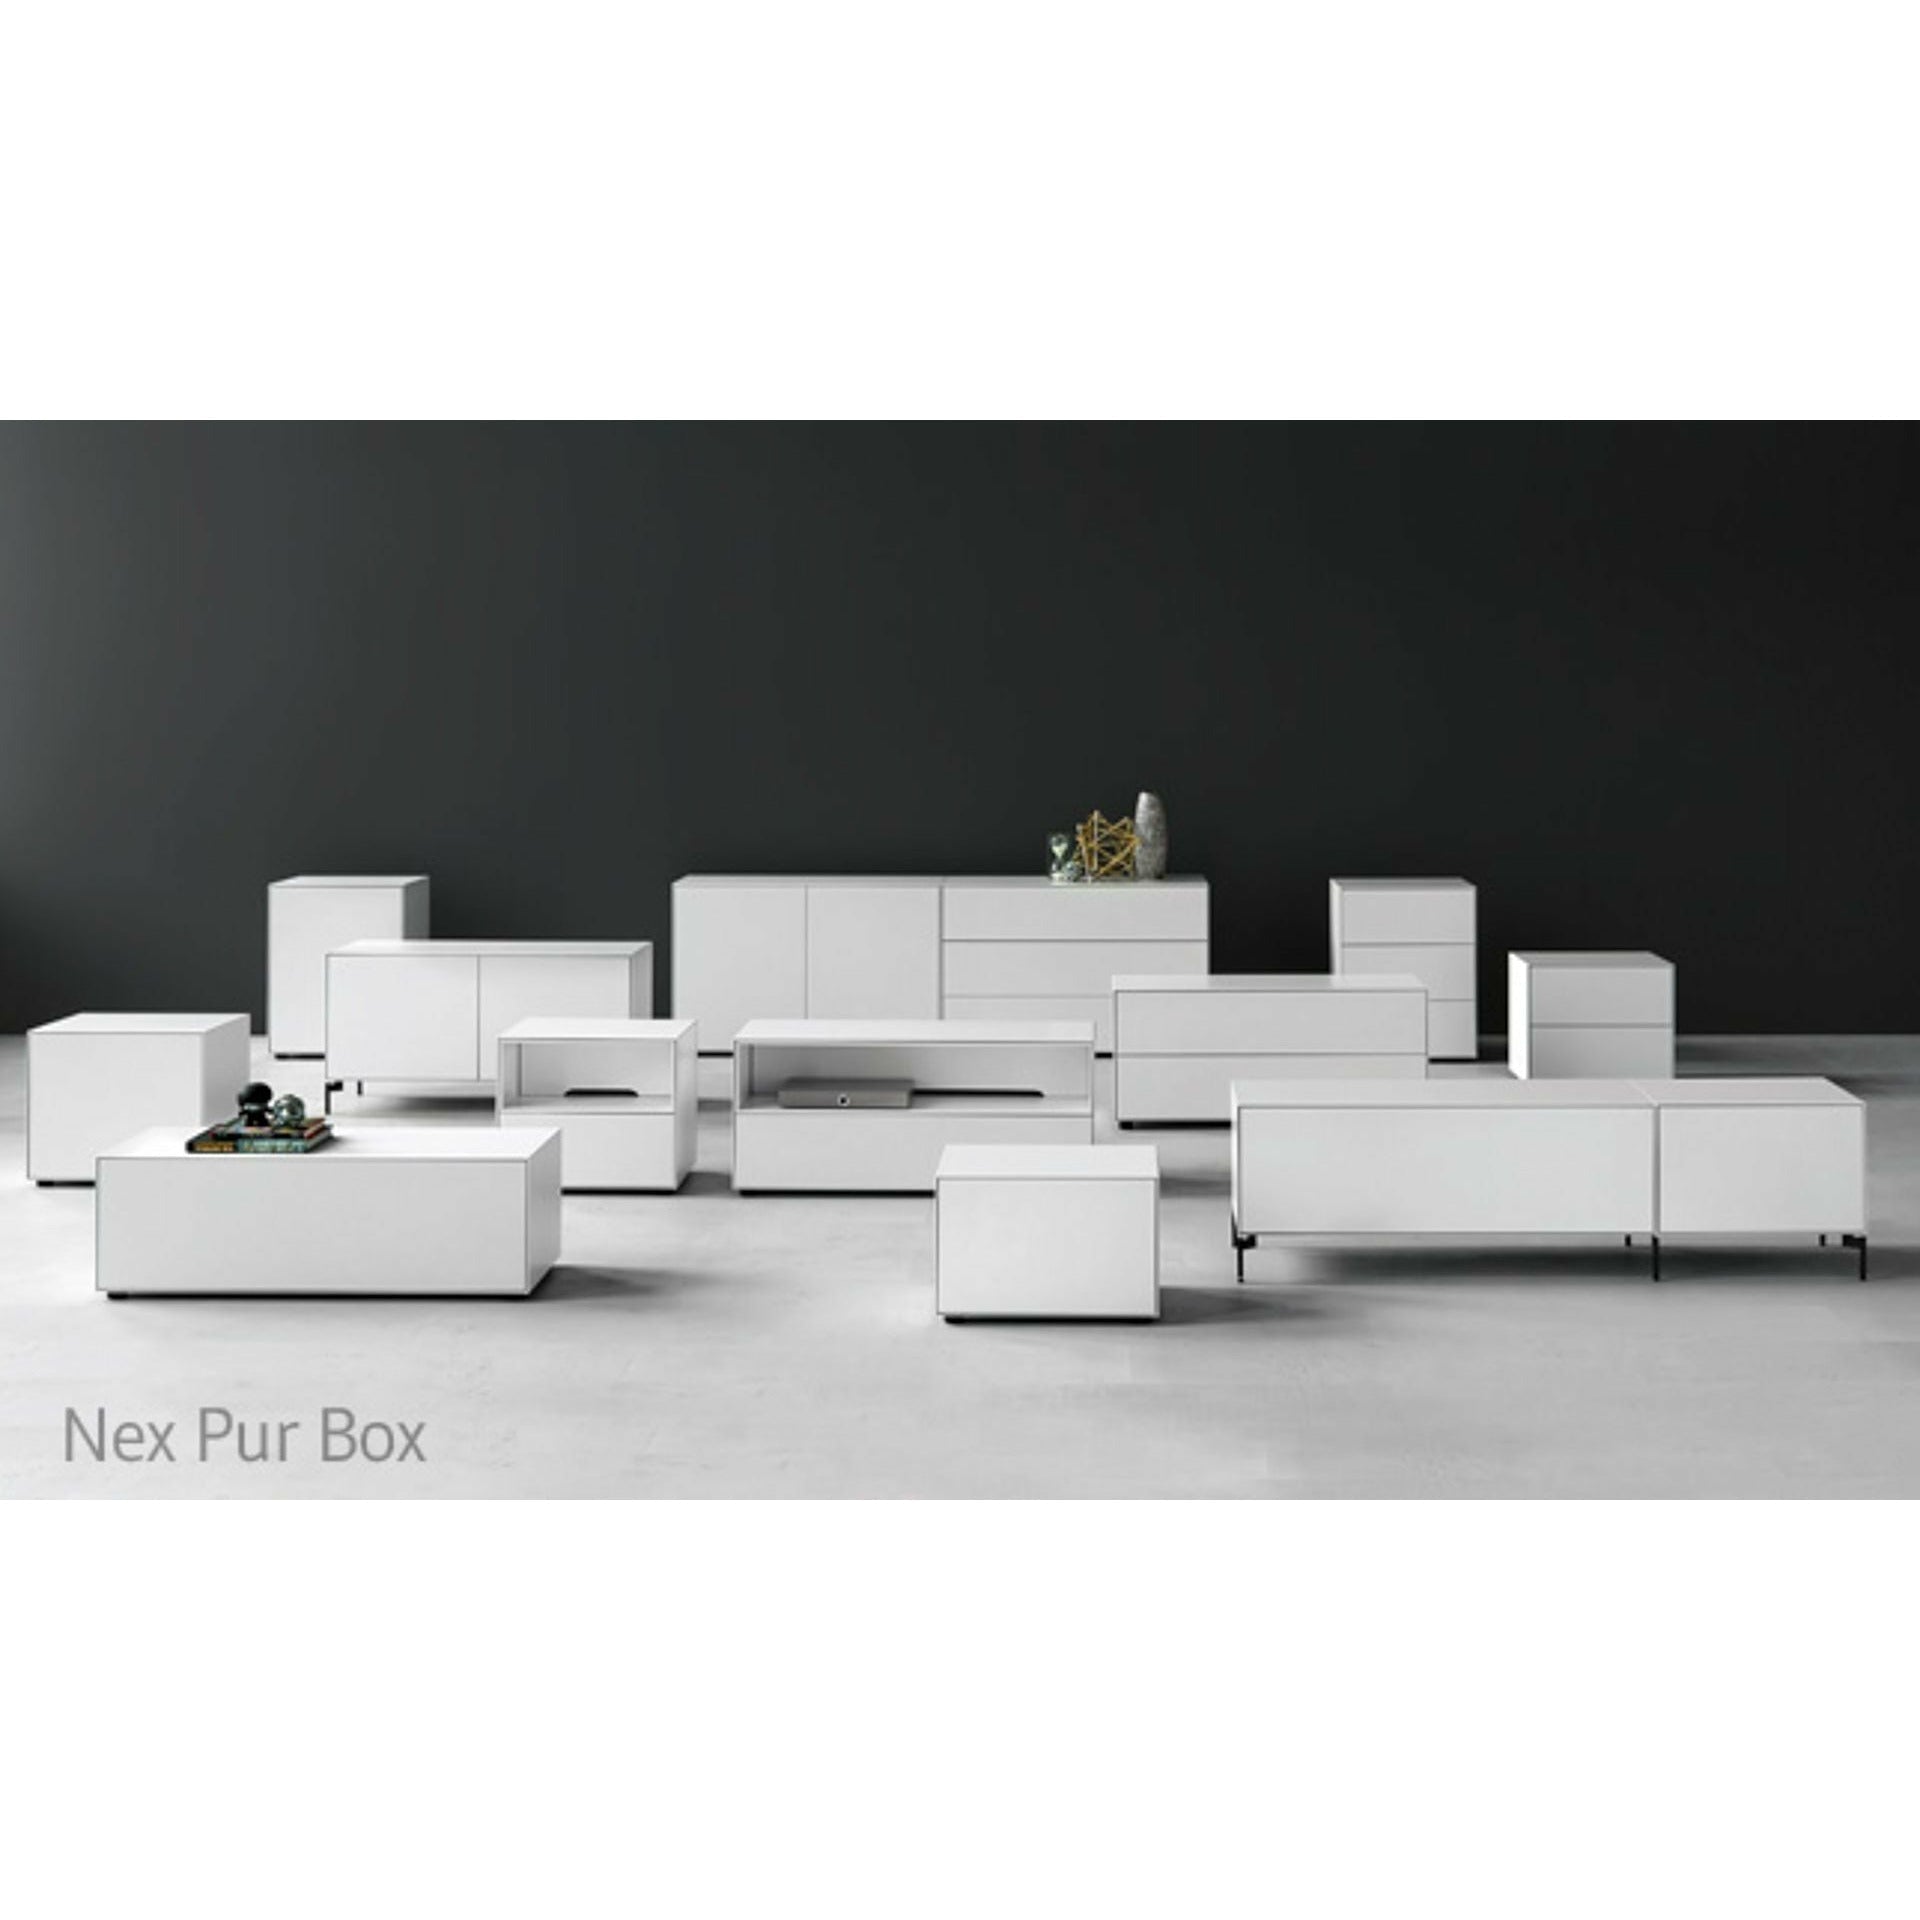 Piure Nex Pur Box Media Flap HXB 37,5x180 cm, 1 hylla